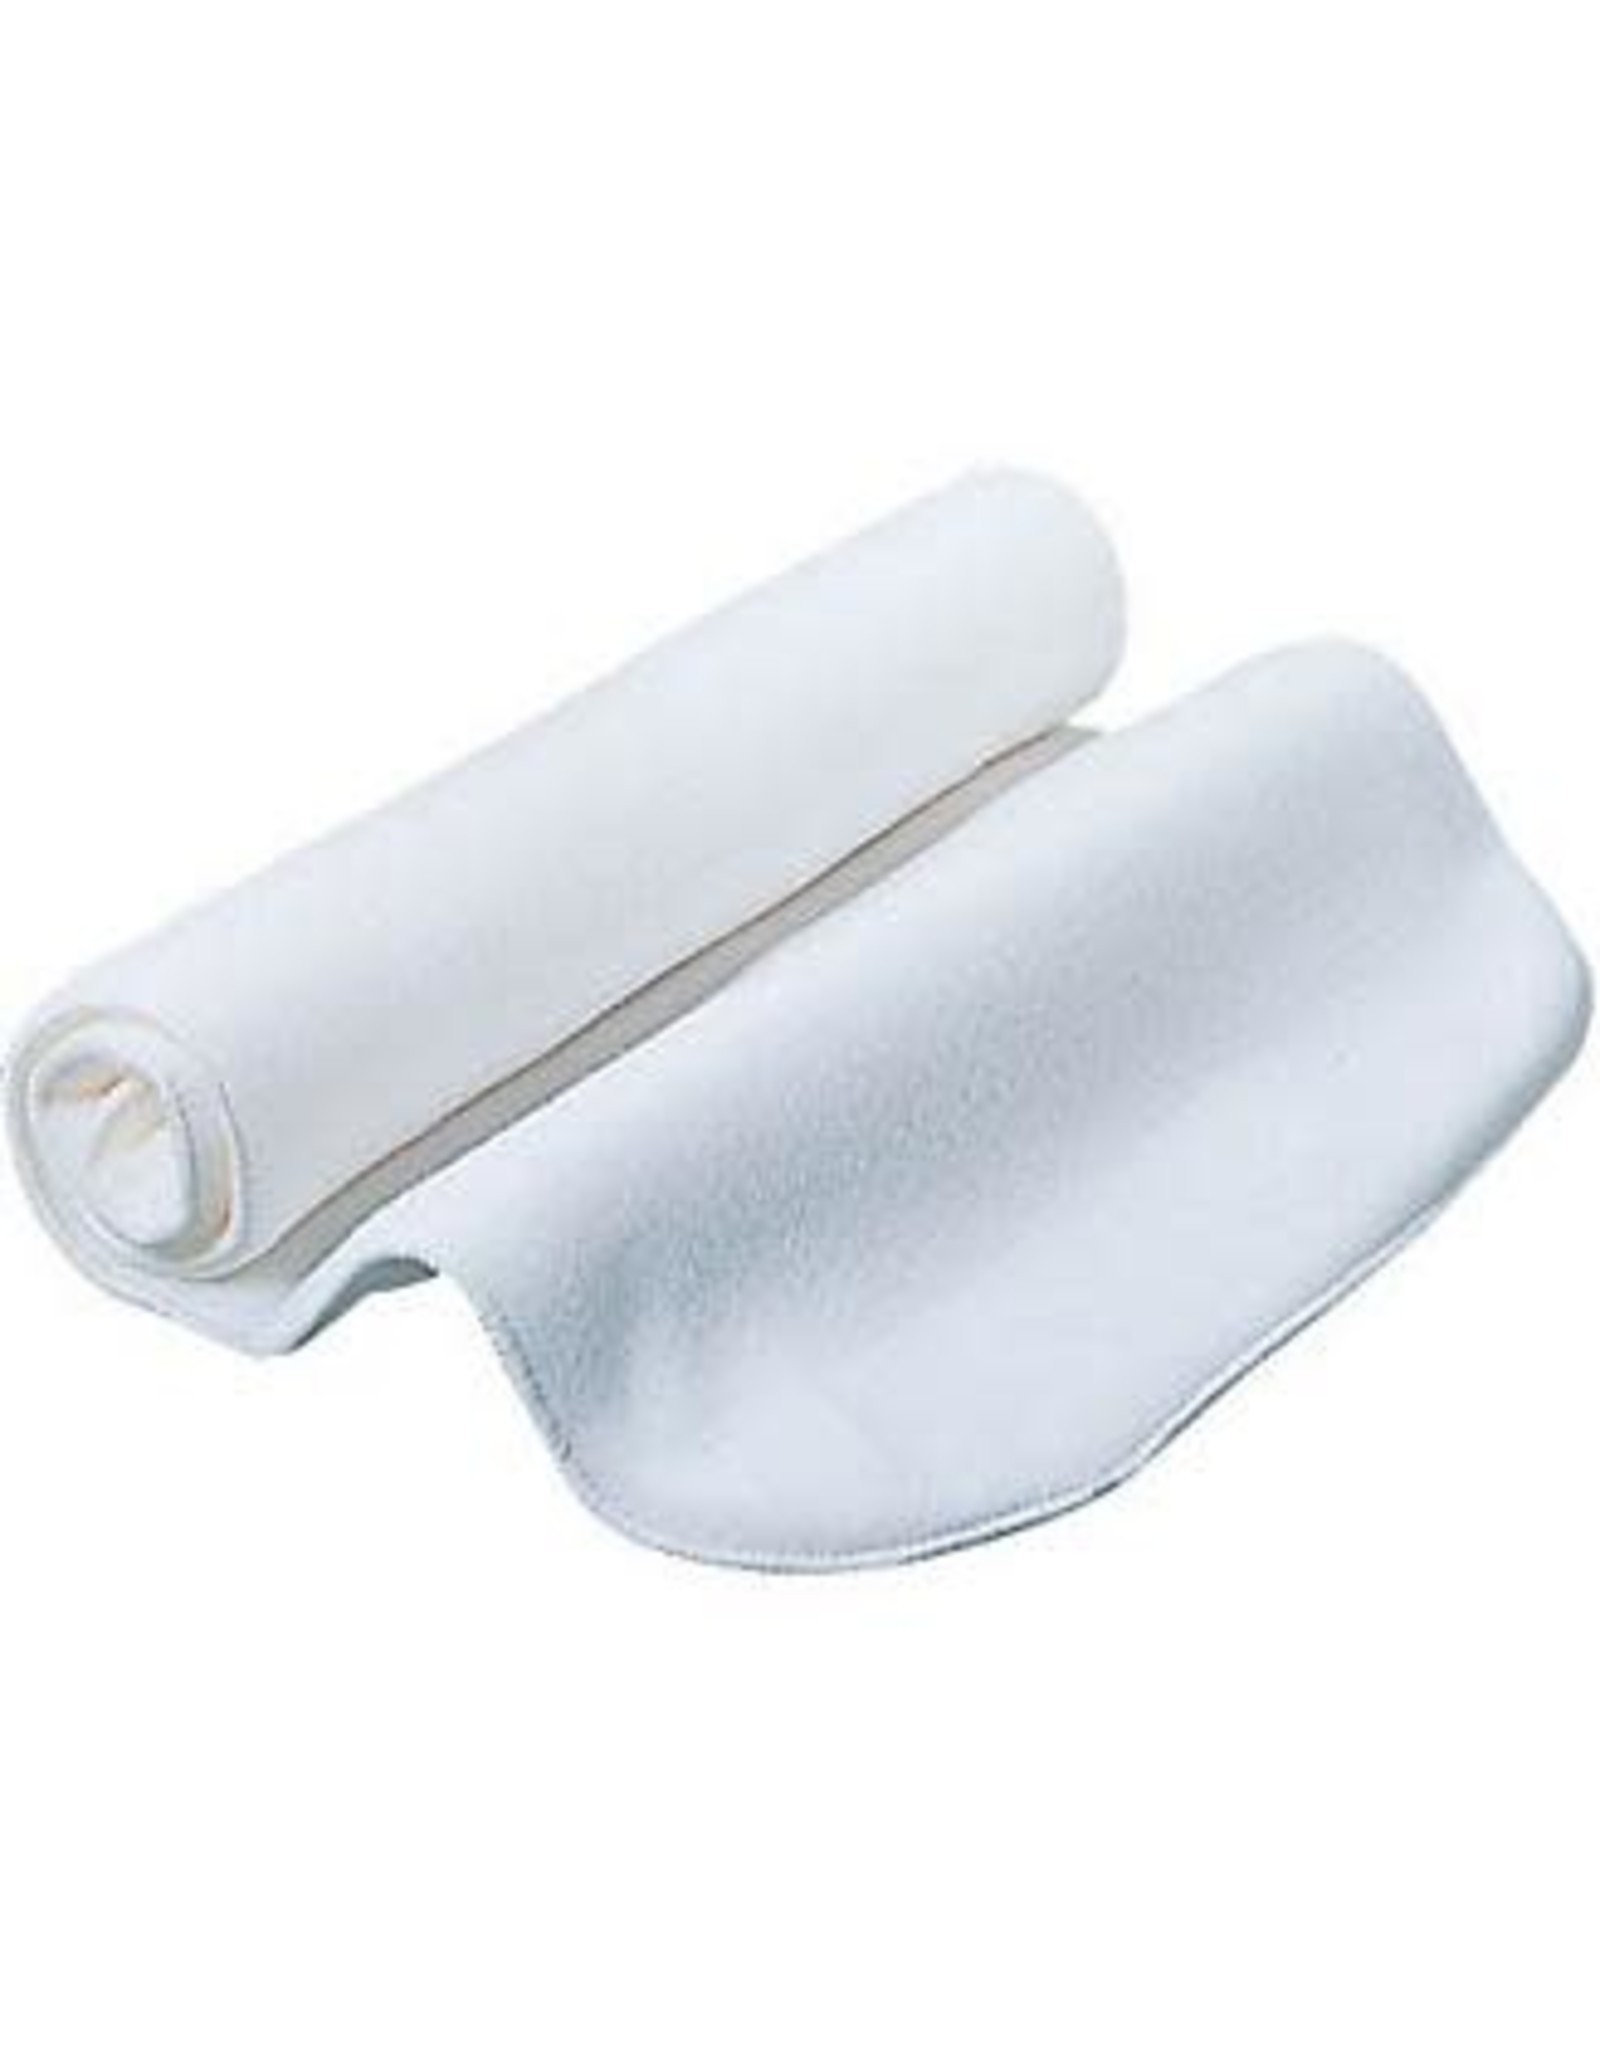 NRCustom 16” White 8420-16 No Bow Bandages